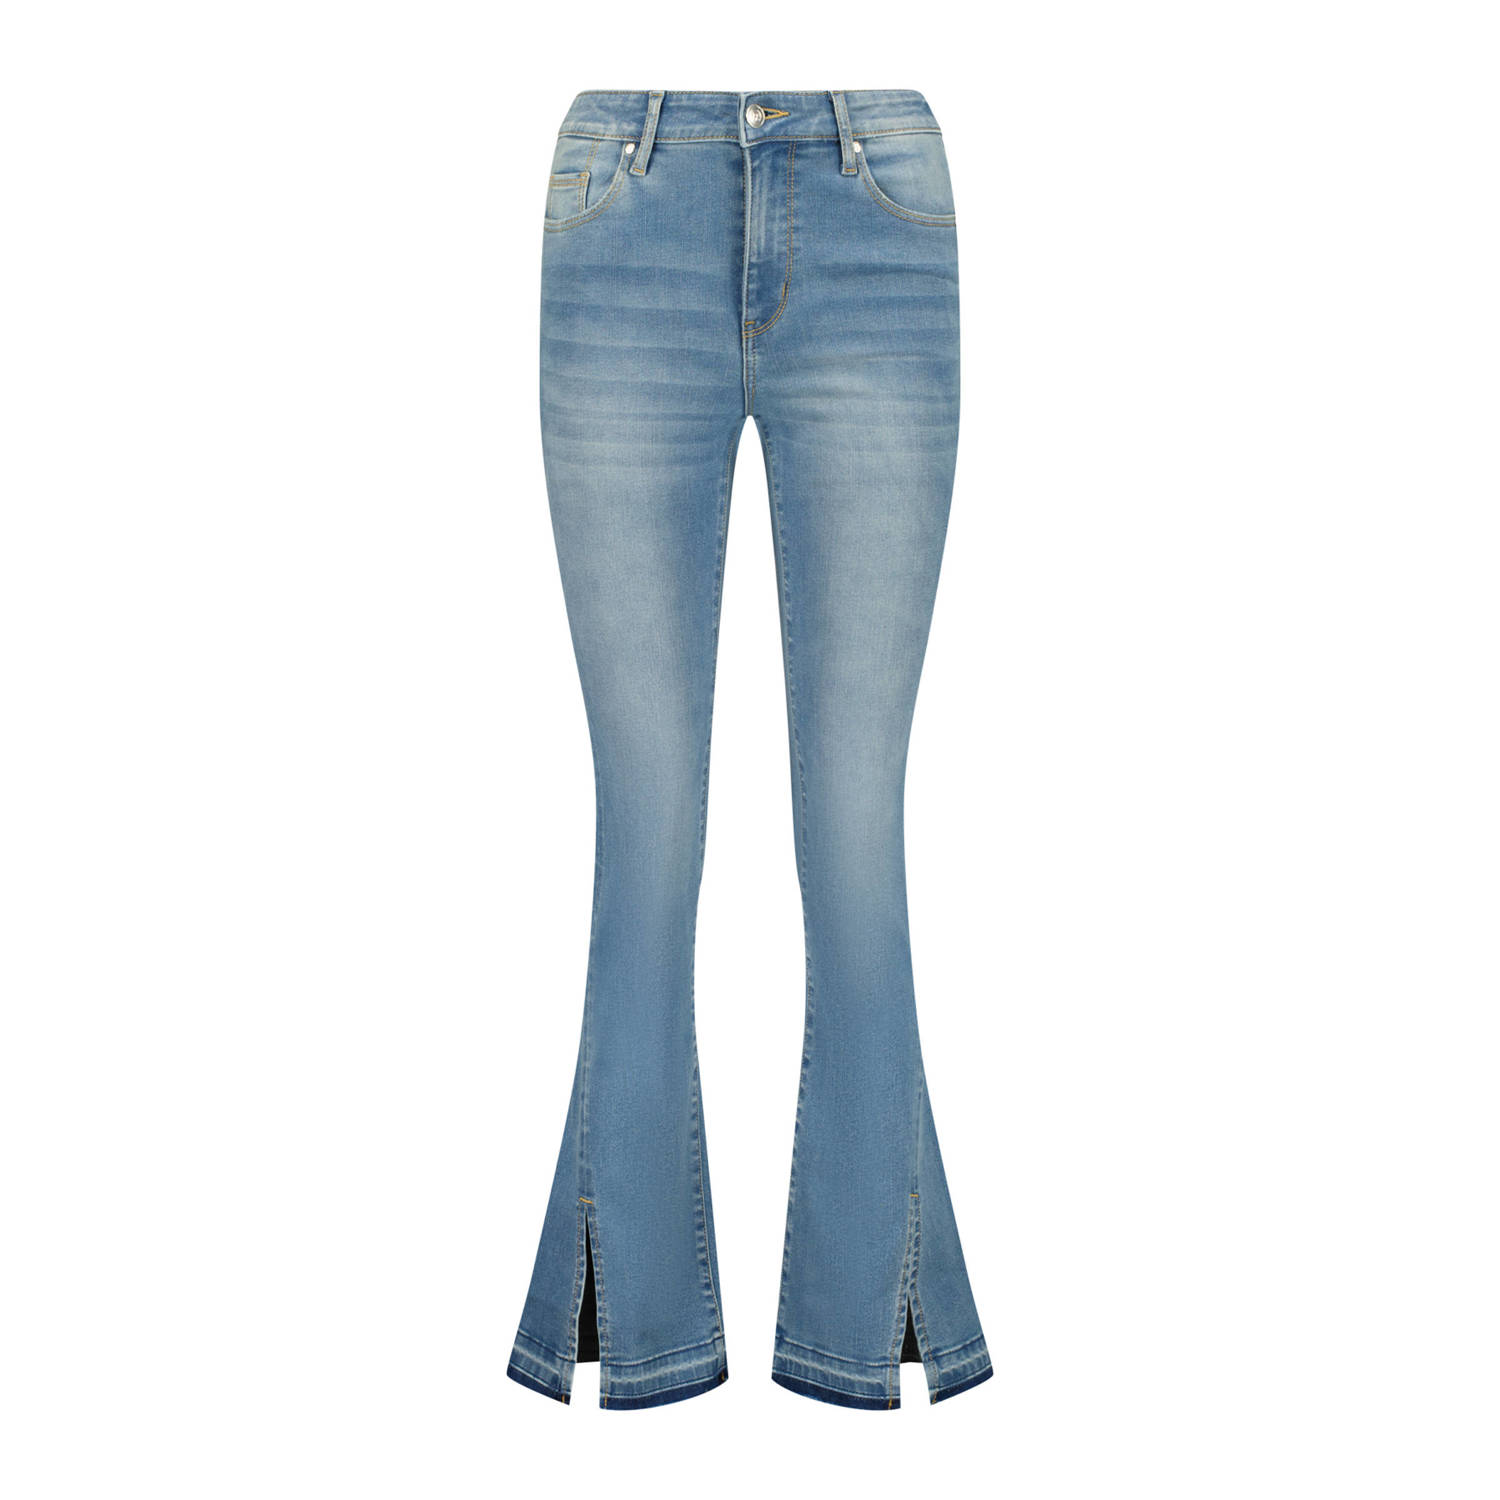 Raizzed high waist flared jeans faye split light blue denim